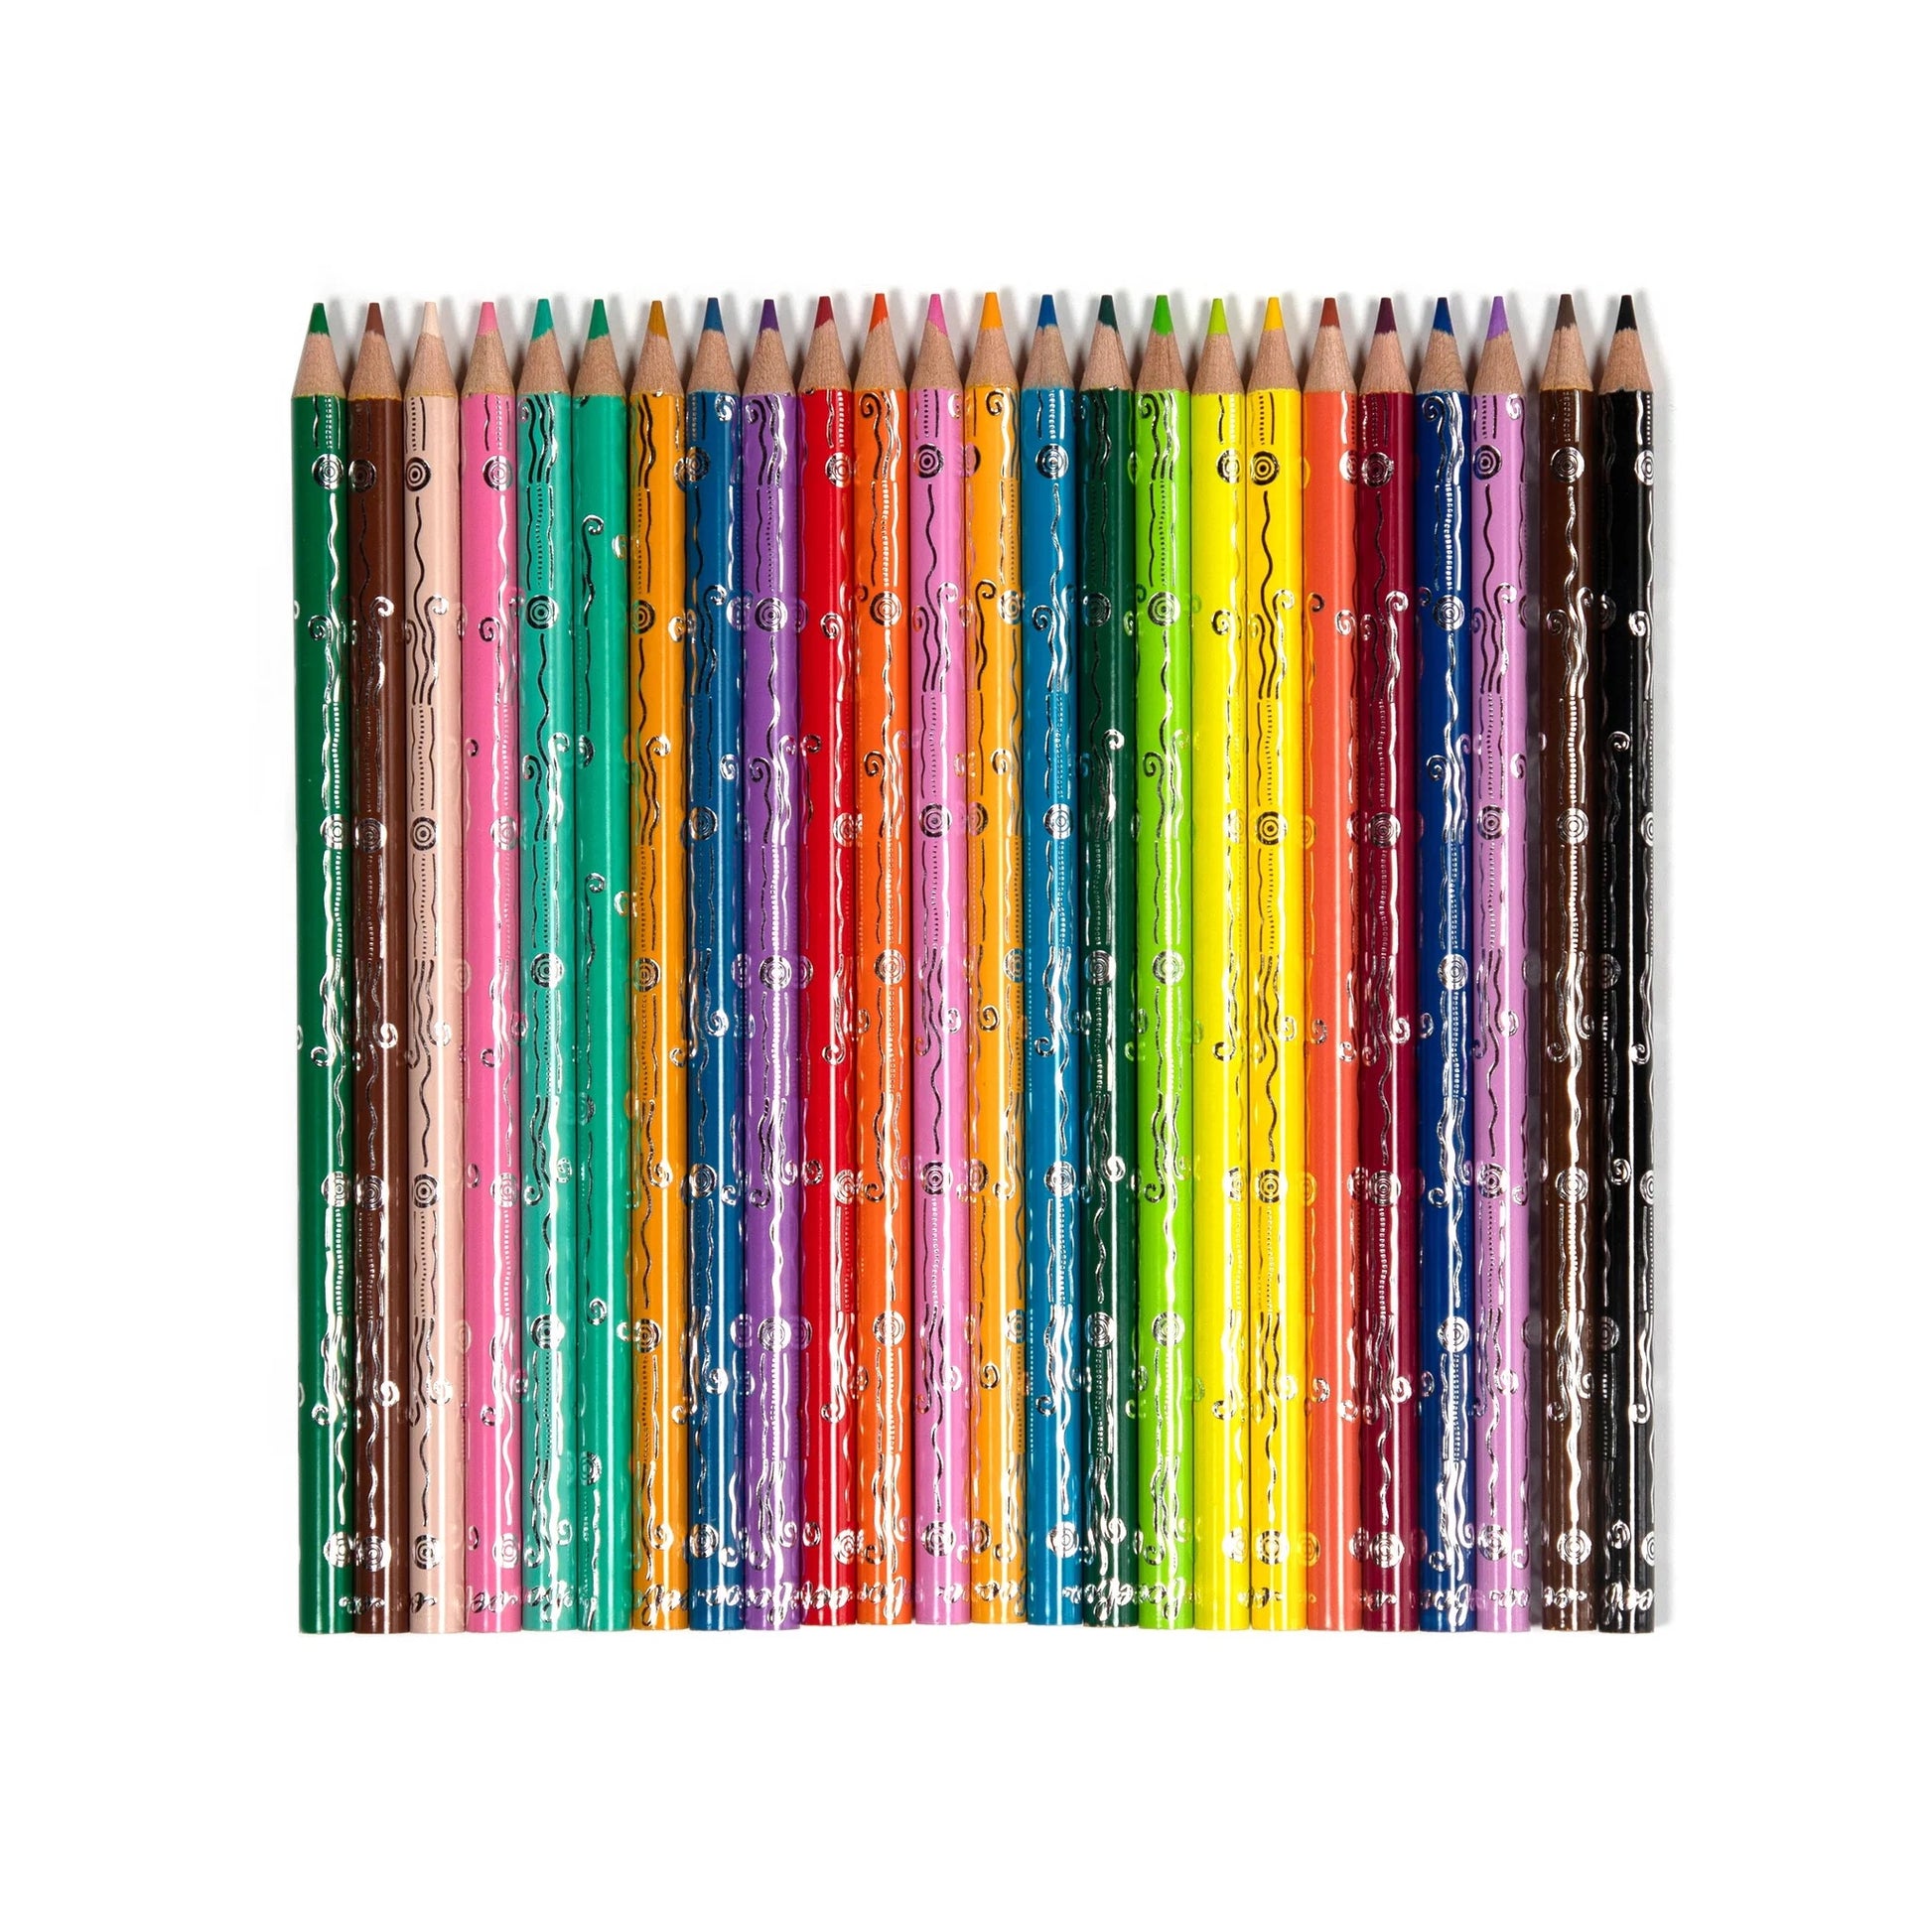 Seaside Garden Watercolor Pencils